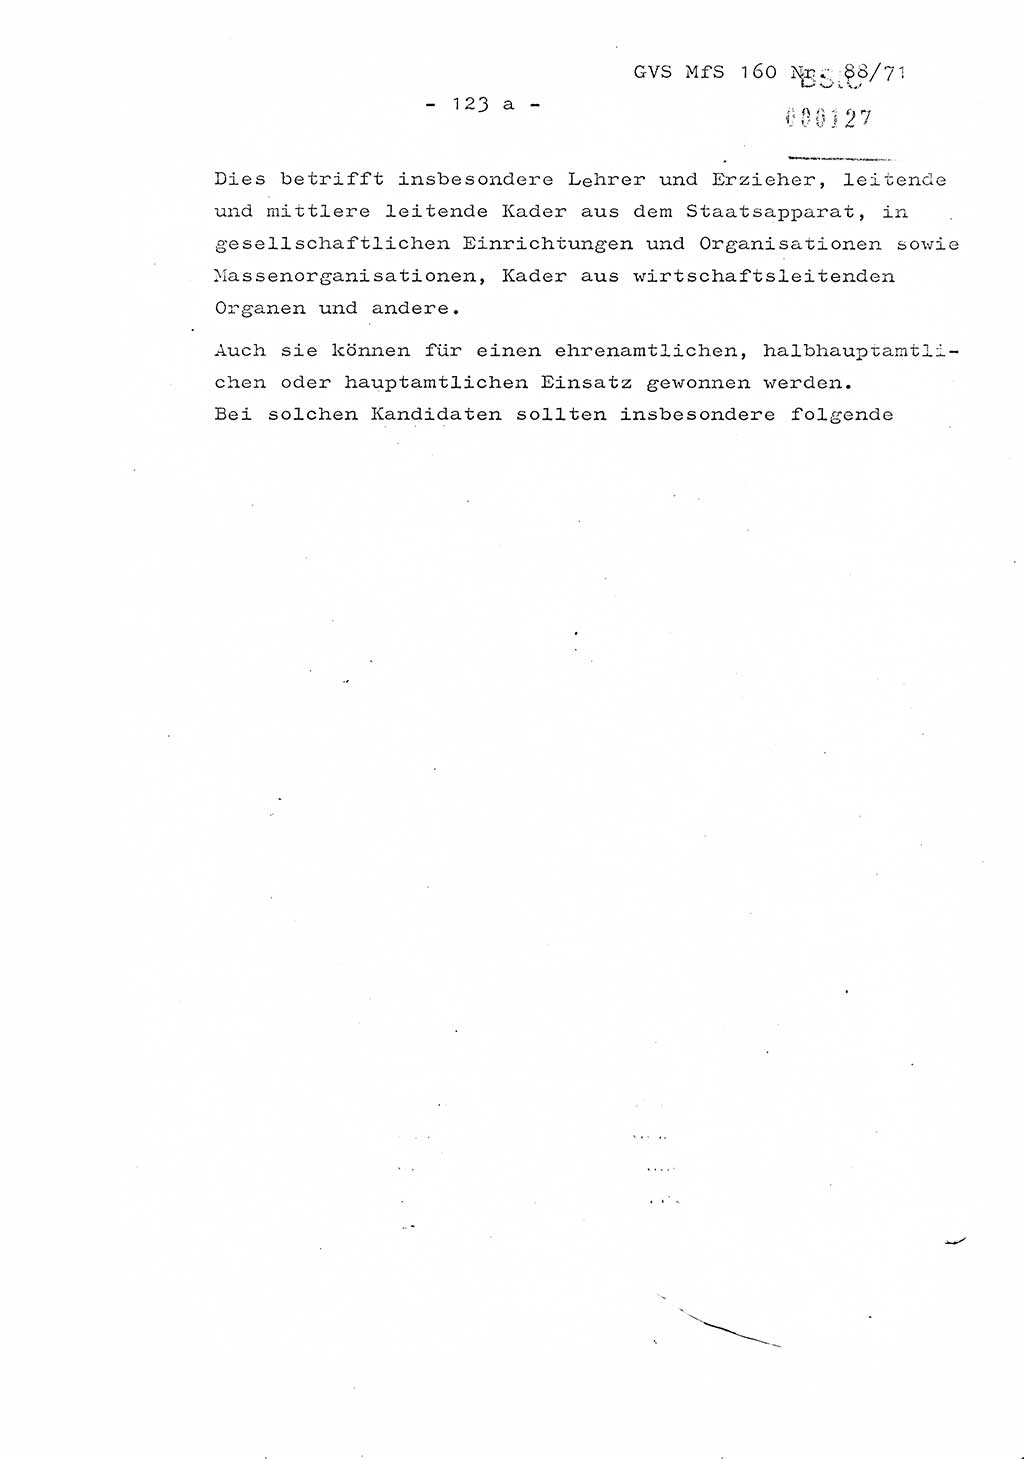 Dissertation Oberstleutnant Josef Schwarz (BV Schwerin), Major Fritz Amm (JHS), Hauptmann Peter Gräßler (JHS), Ministerium für Staatssicherheit (MfS) [Deutsche Demokratische Republik (DDR)], Juristische Hochschule (JHS), Geheime Verschlußsache (GVS) 160-88/71, Potsdam 1972, Seite 123/1 (Diss. MfS DDR JHS GVS 160-88/71 1972, S. 123/1)